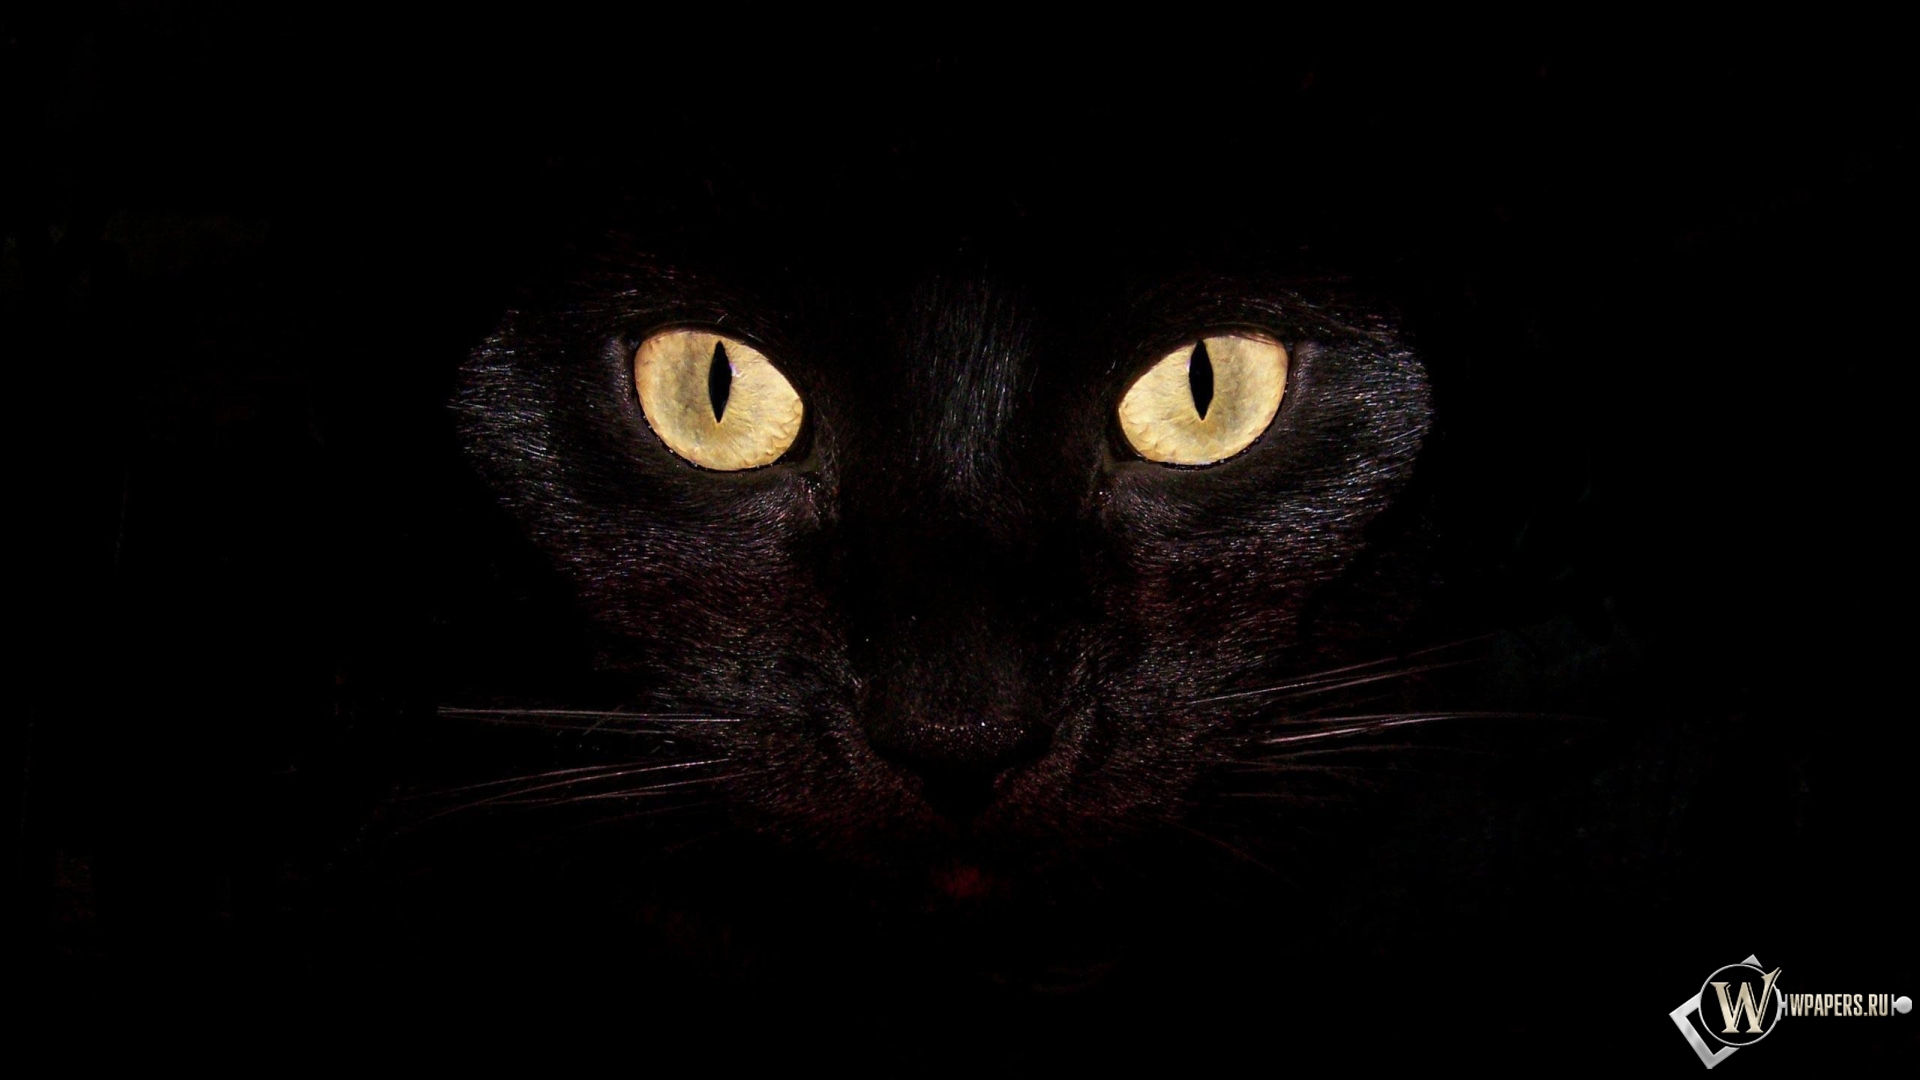 Черная кошка на чернофм фоне 1920x1080